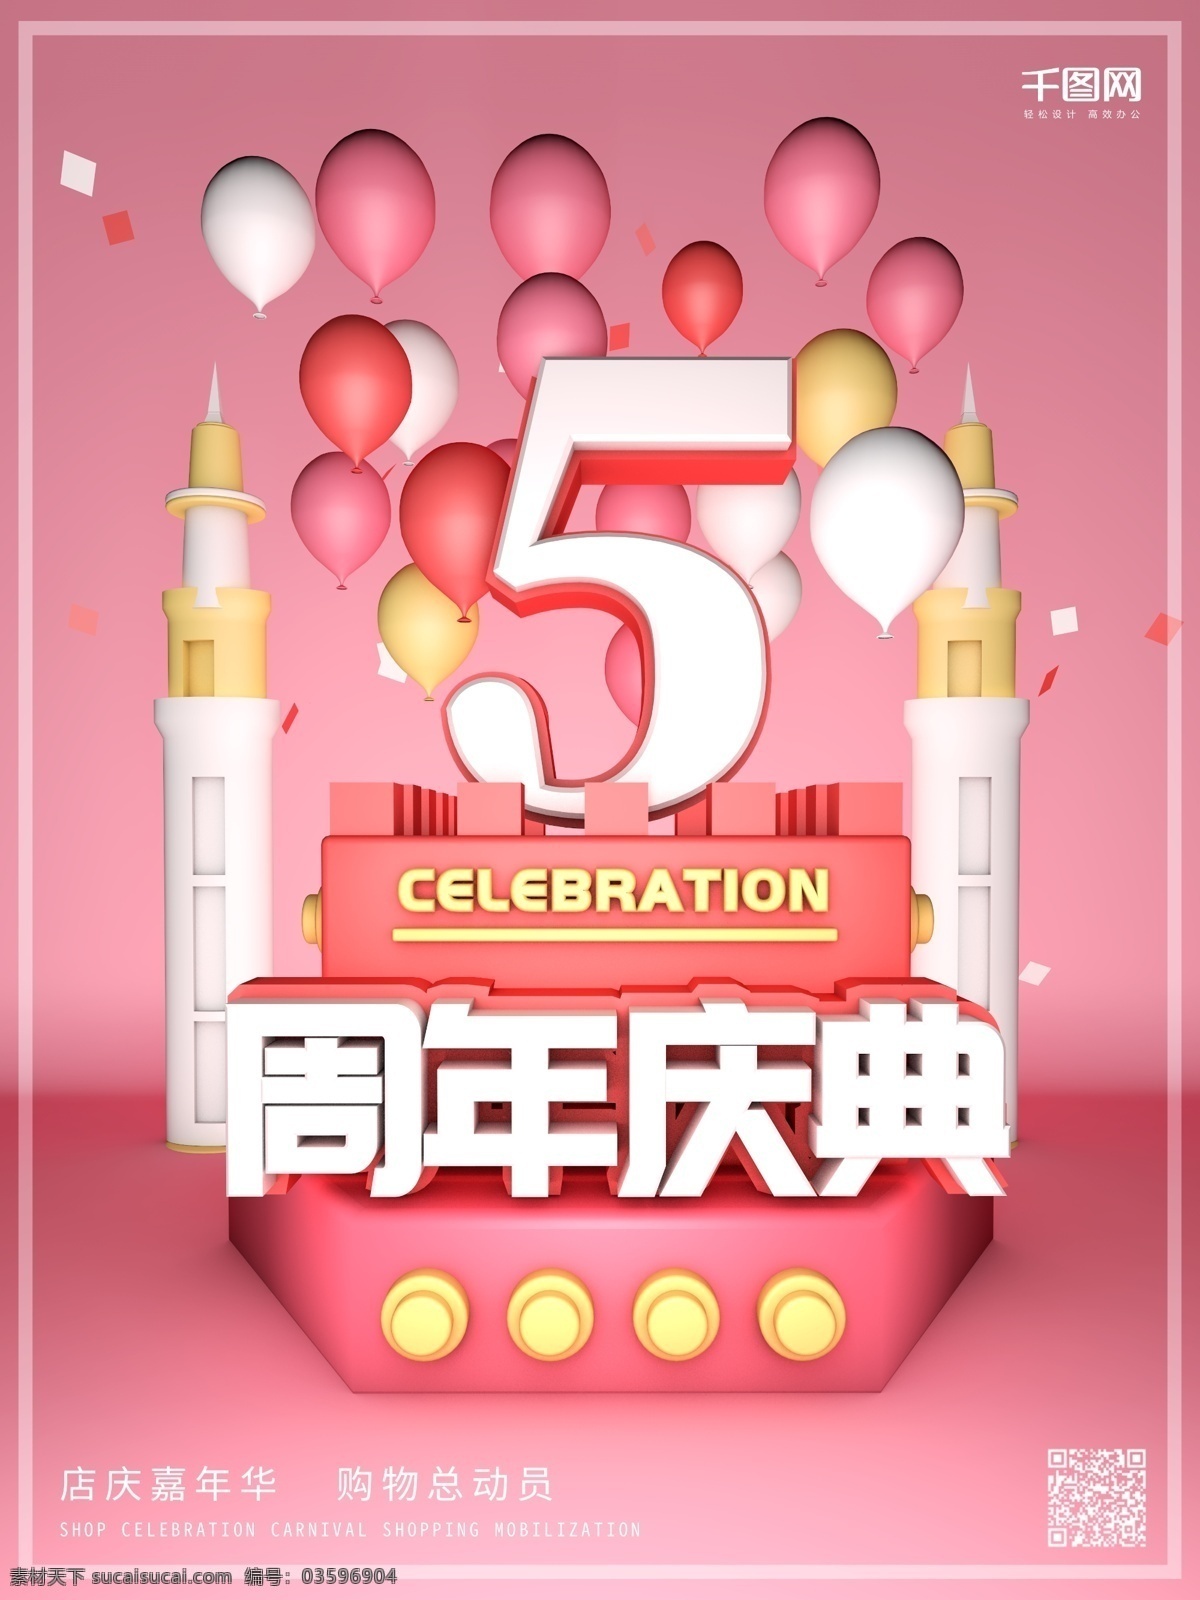 c4d 粉色 小 清新 周年庆 促销 宣传海报 小清新 宣传 气球 渐变 模型 纸屑 折扣 周年庆典